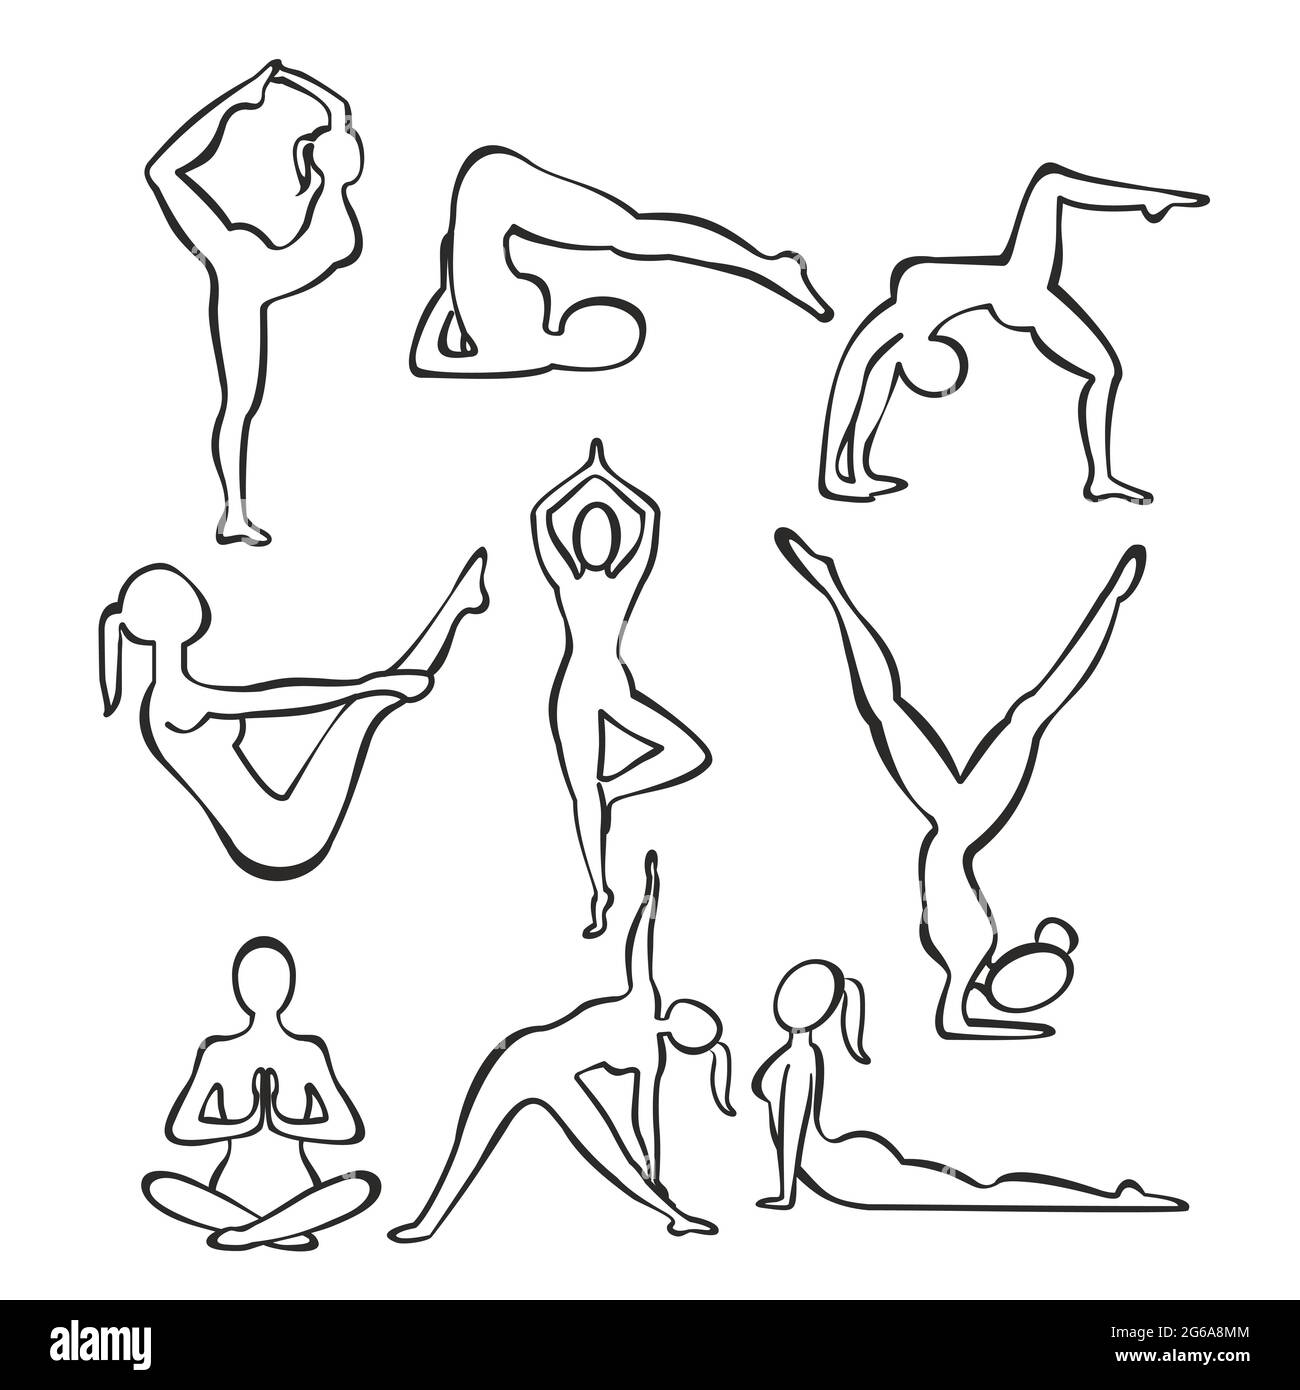 Illustrazione vettoriale insieme di sagome di contorno di ragazze slim che praticano posizioni yoga, linee forme di donna che fa yoga, concetto di allenamento fitness. Illustrazione Vettoriale